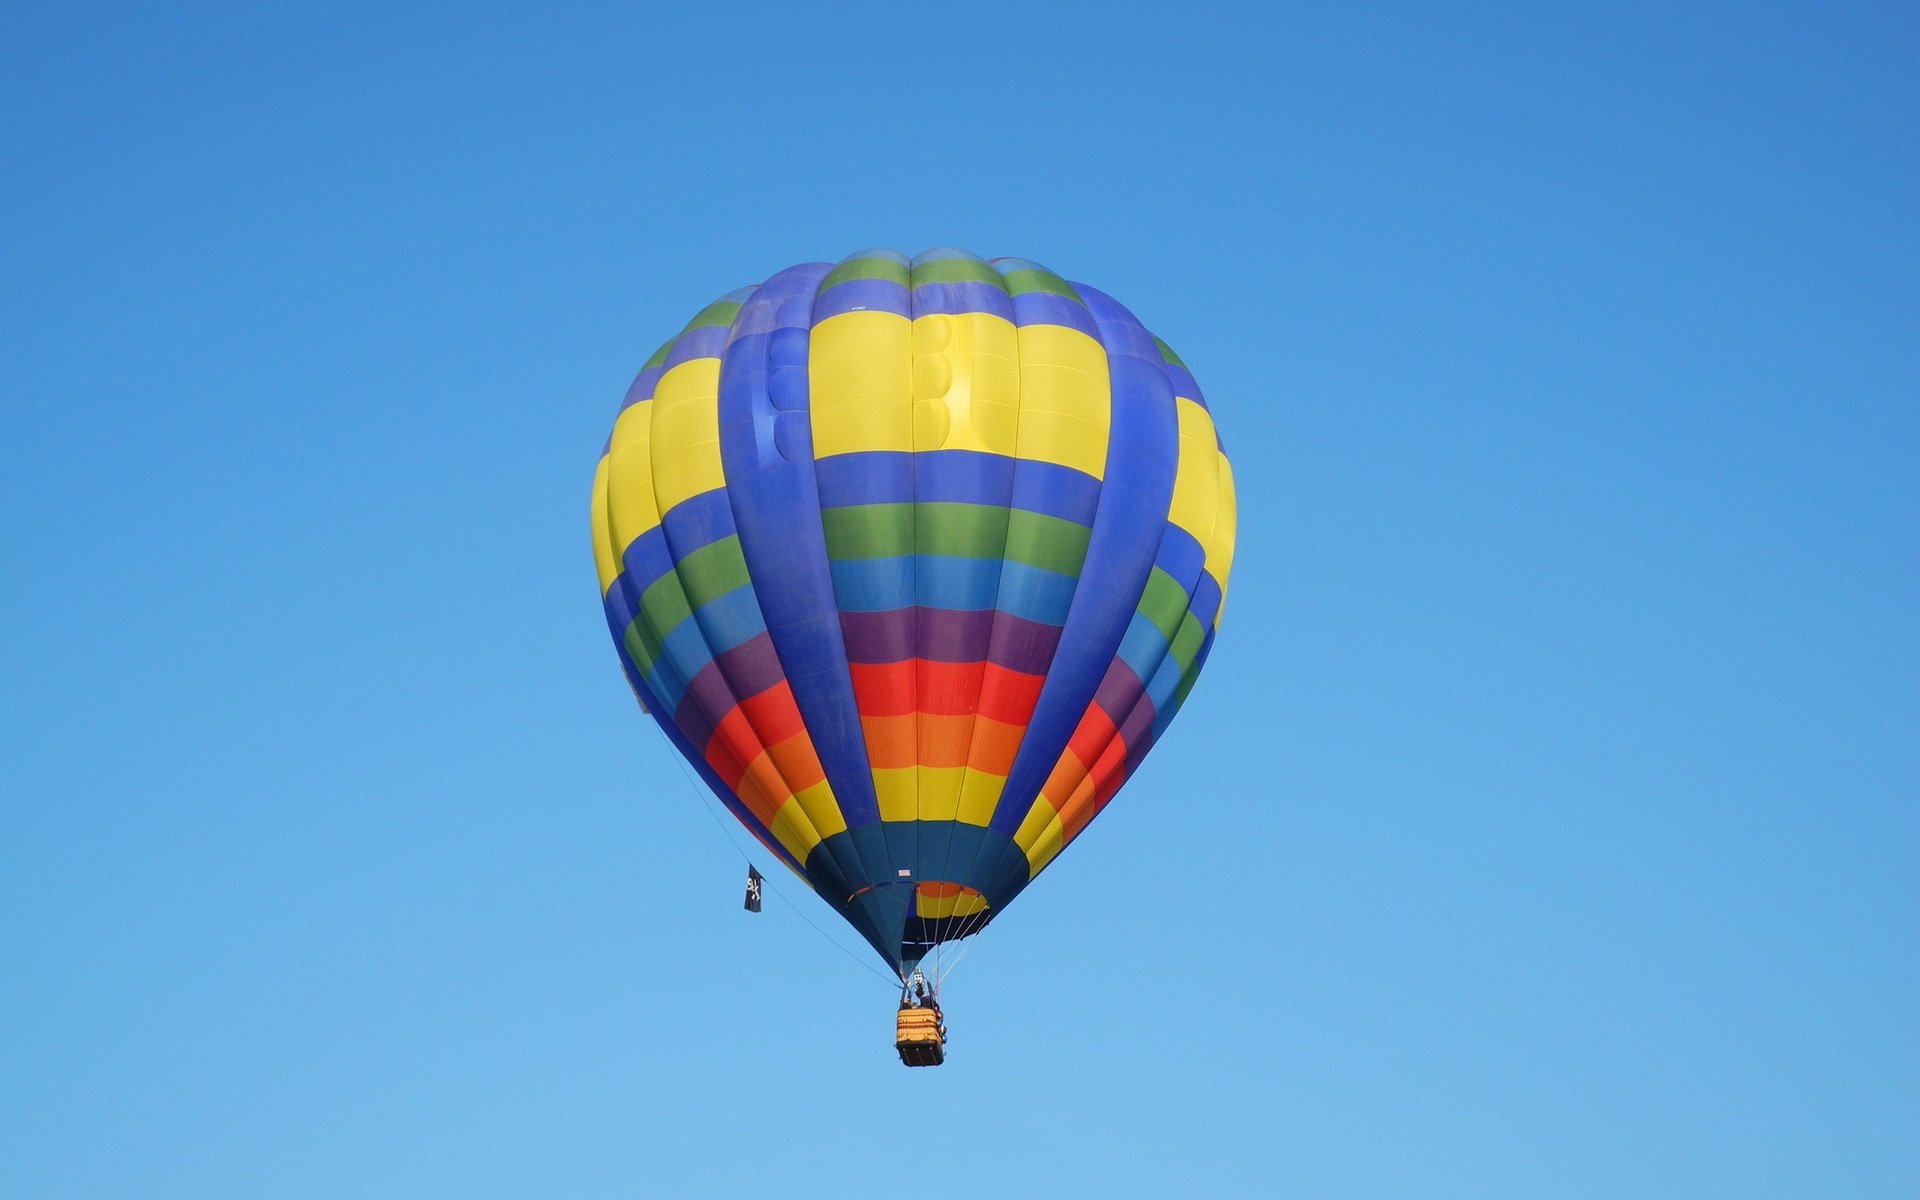 Фото воздушного шара с корзиной в небе